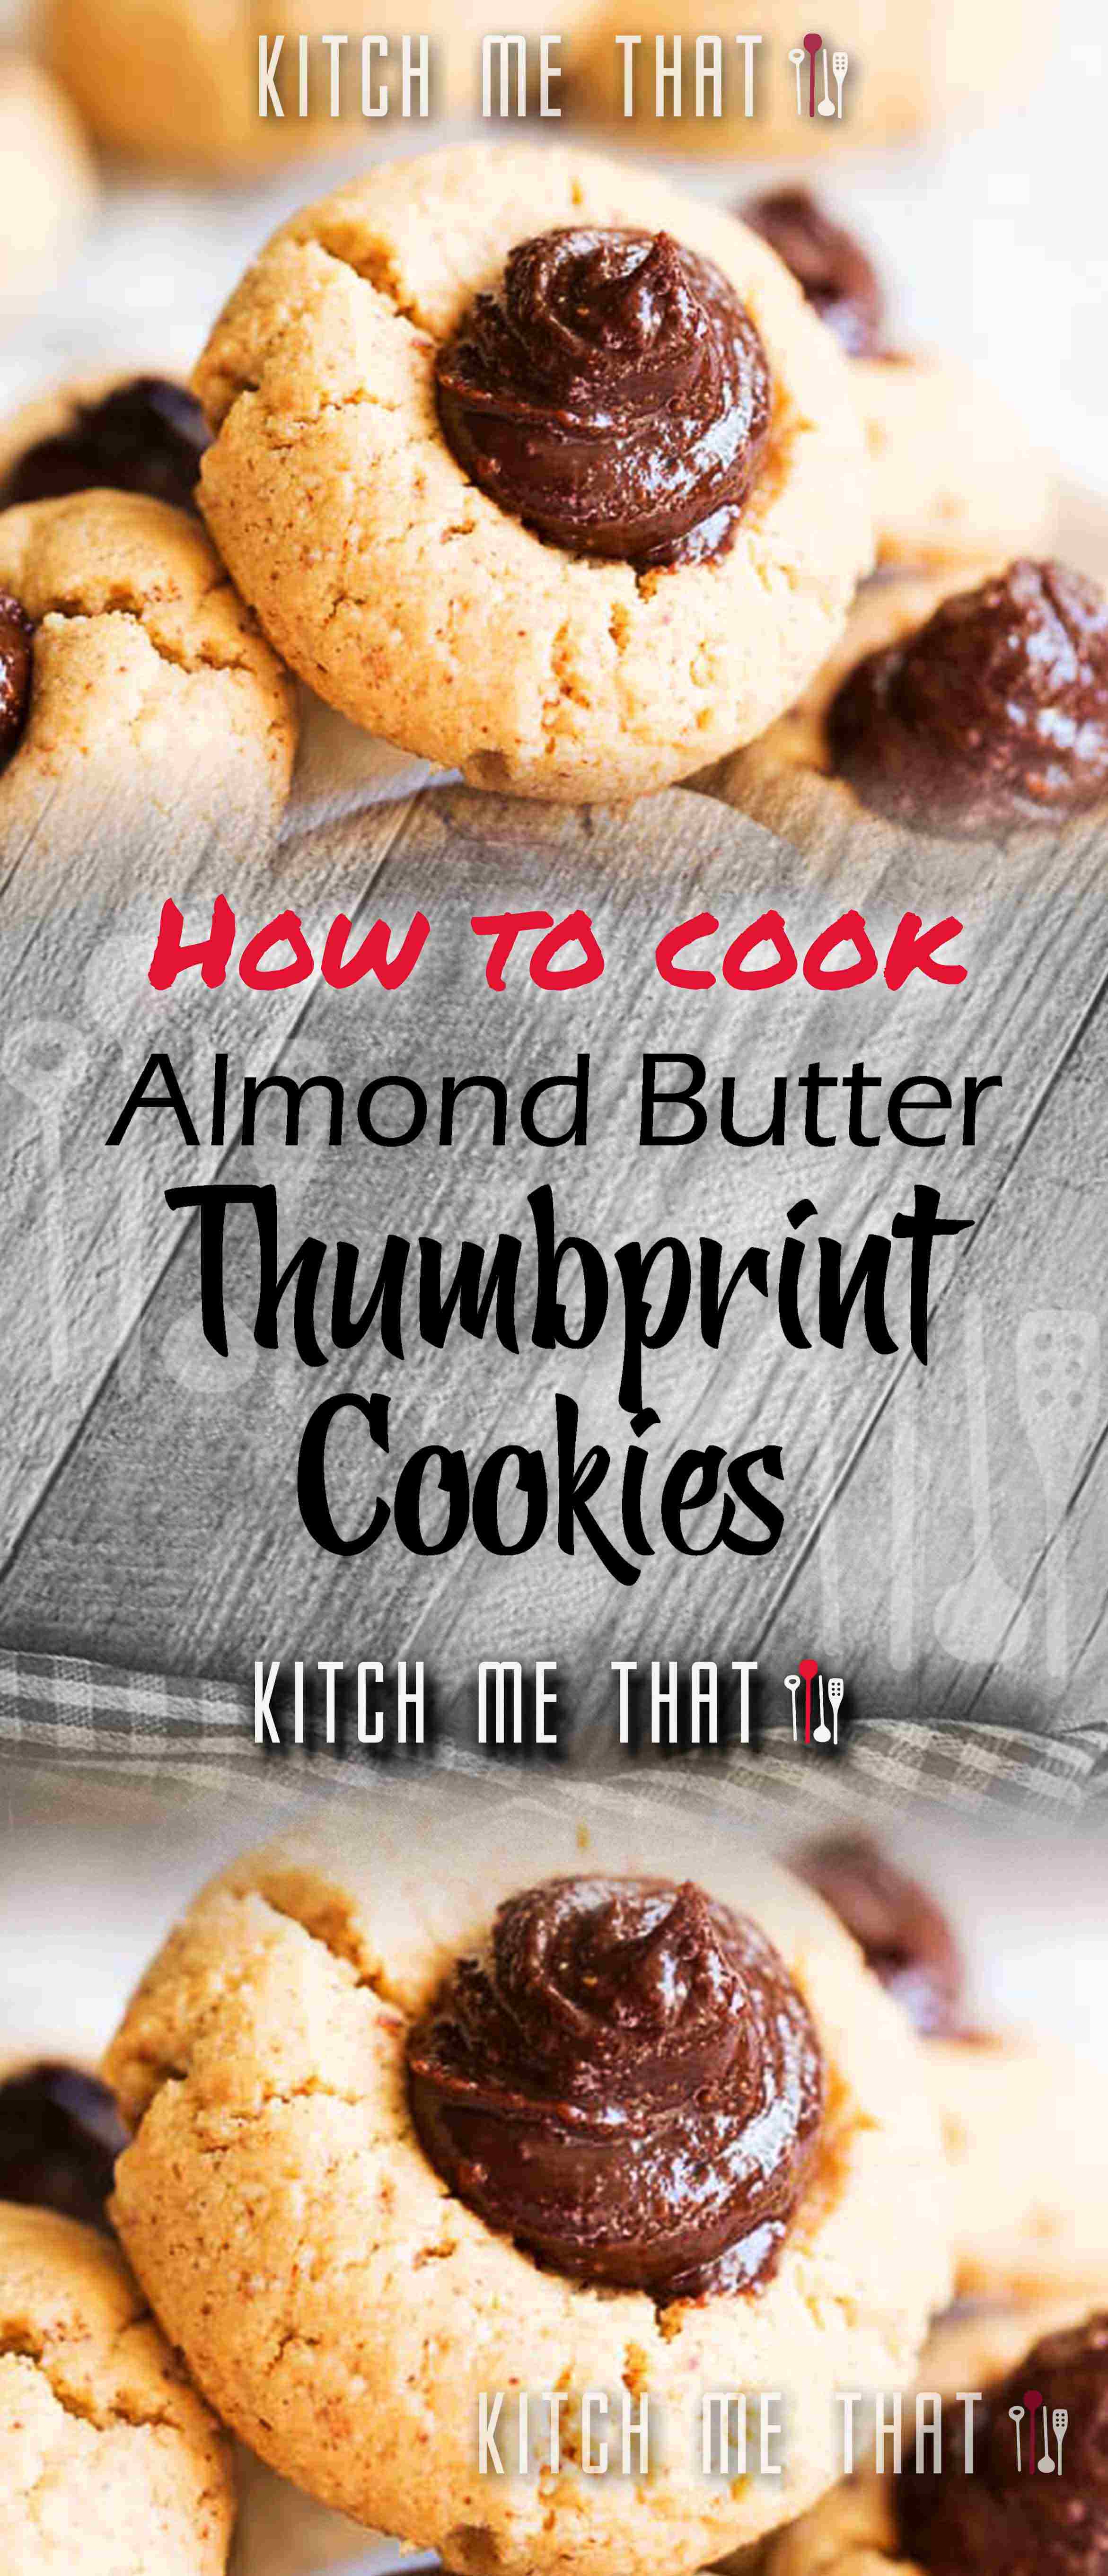 Almond Butter Thumbprint Cookies